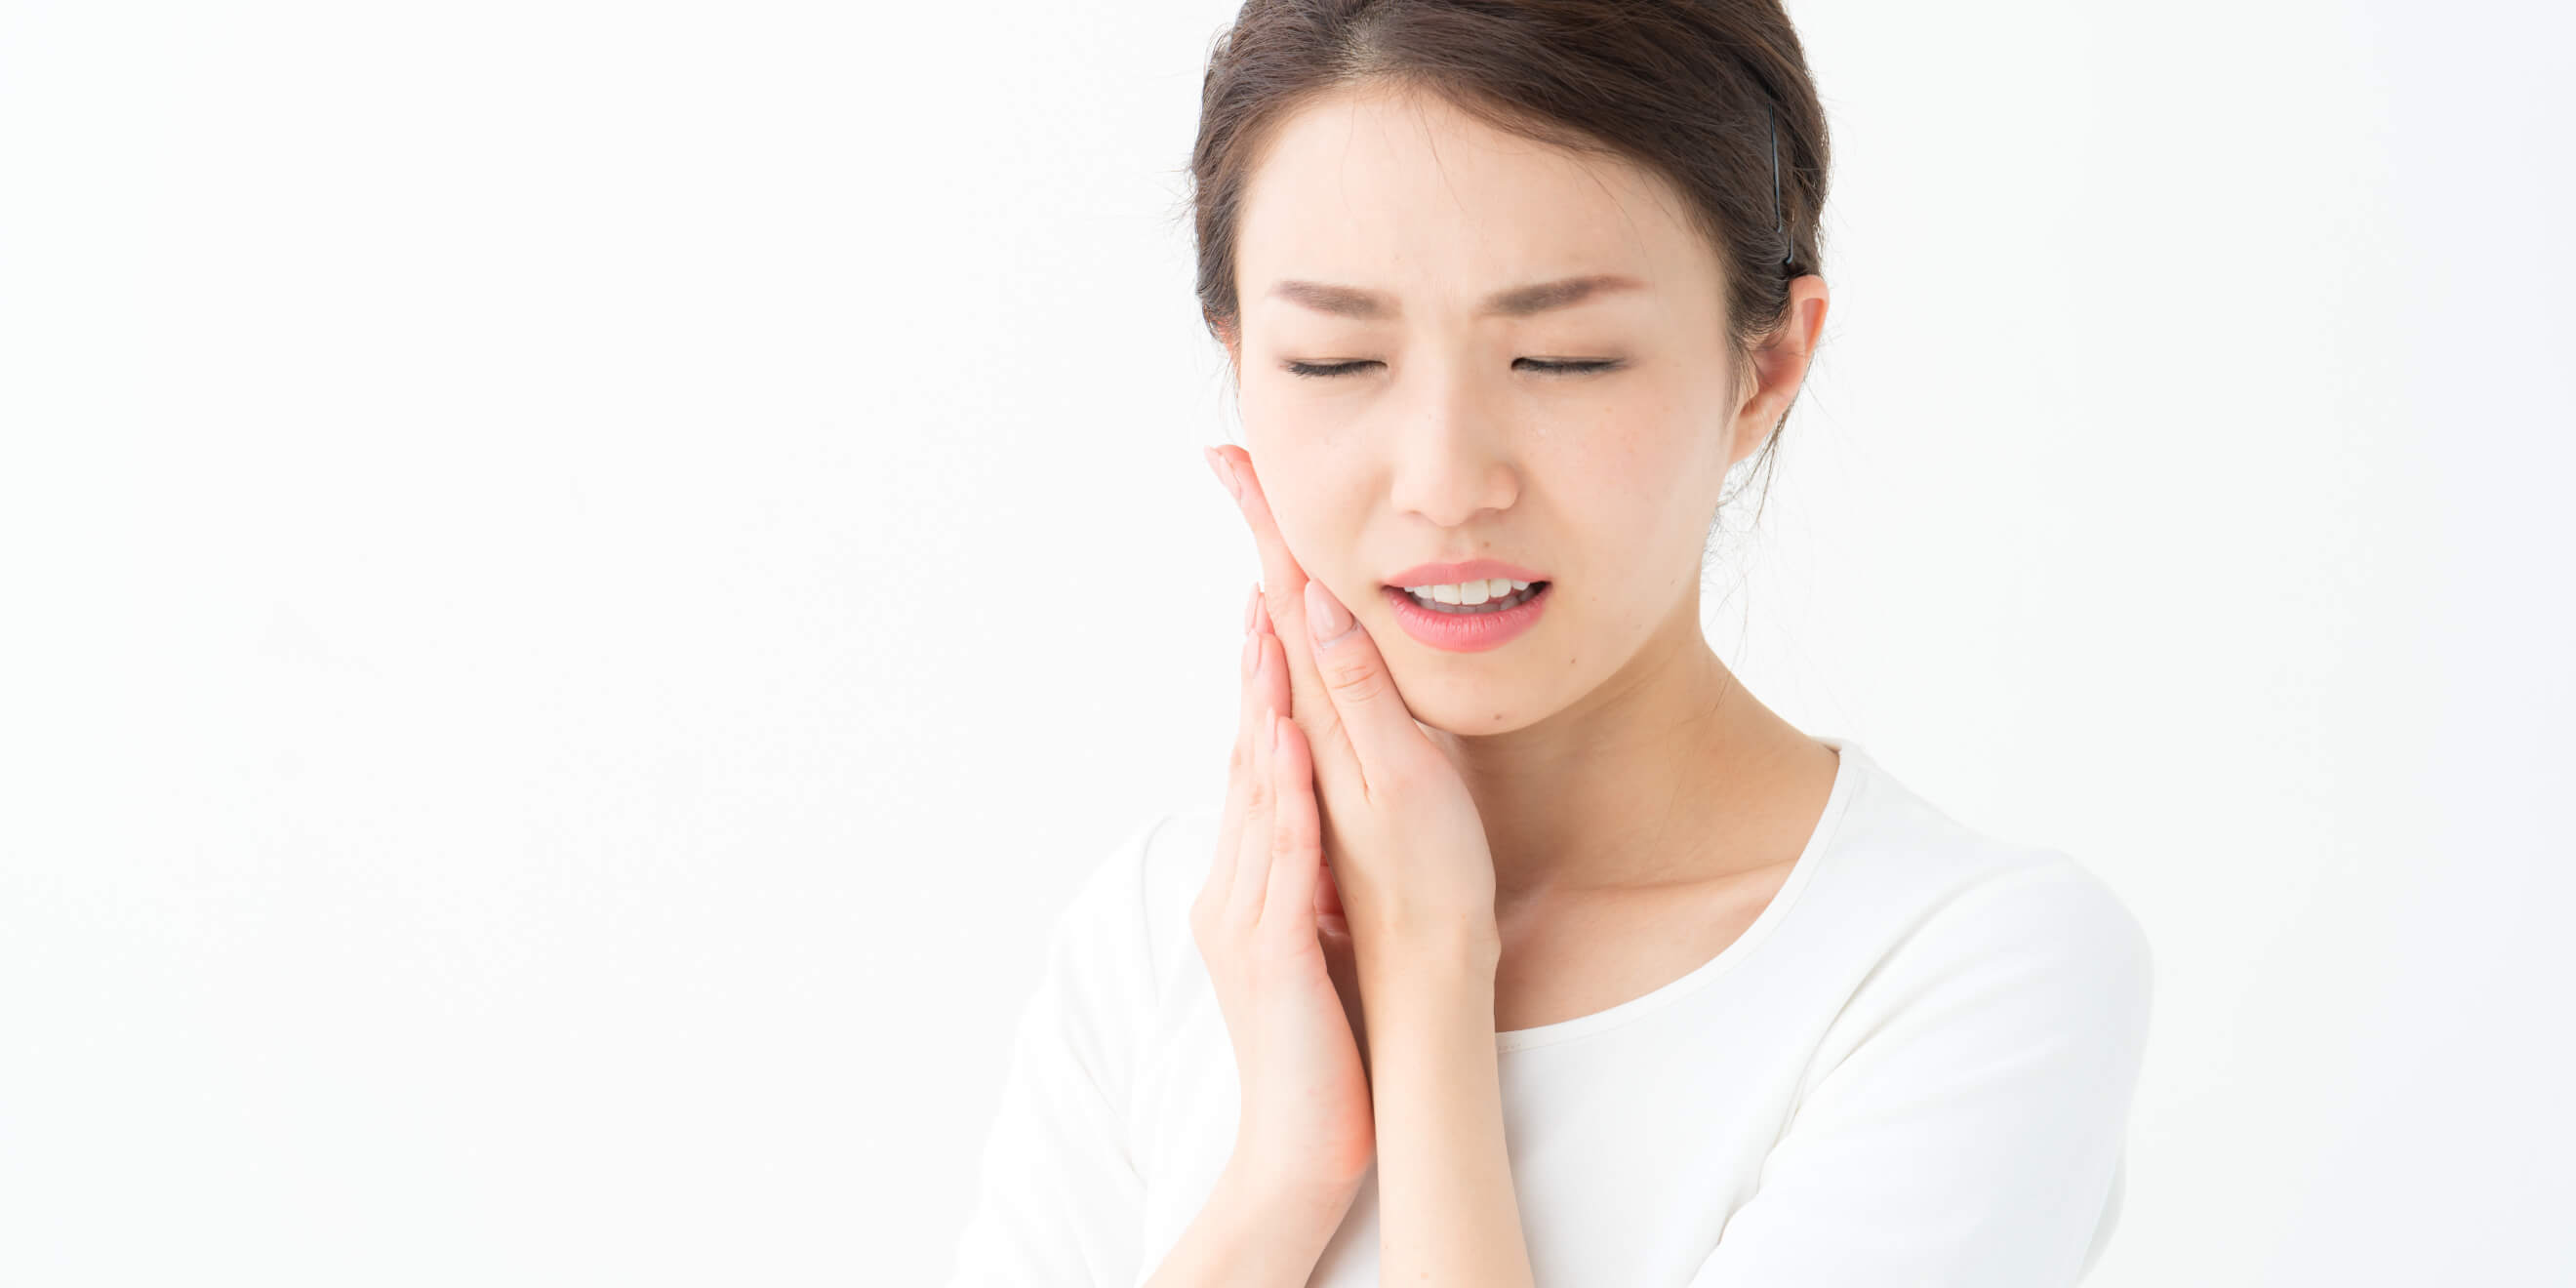 顎関節症治療の経験も豊富